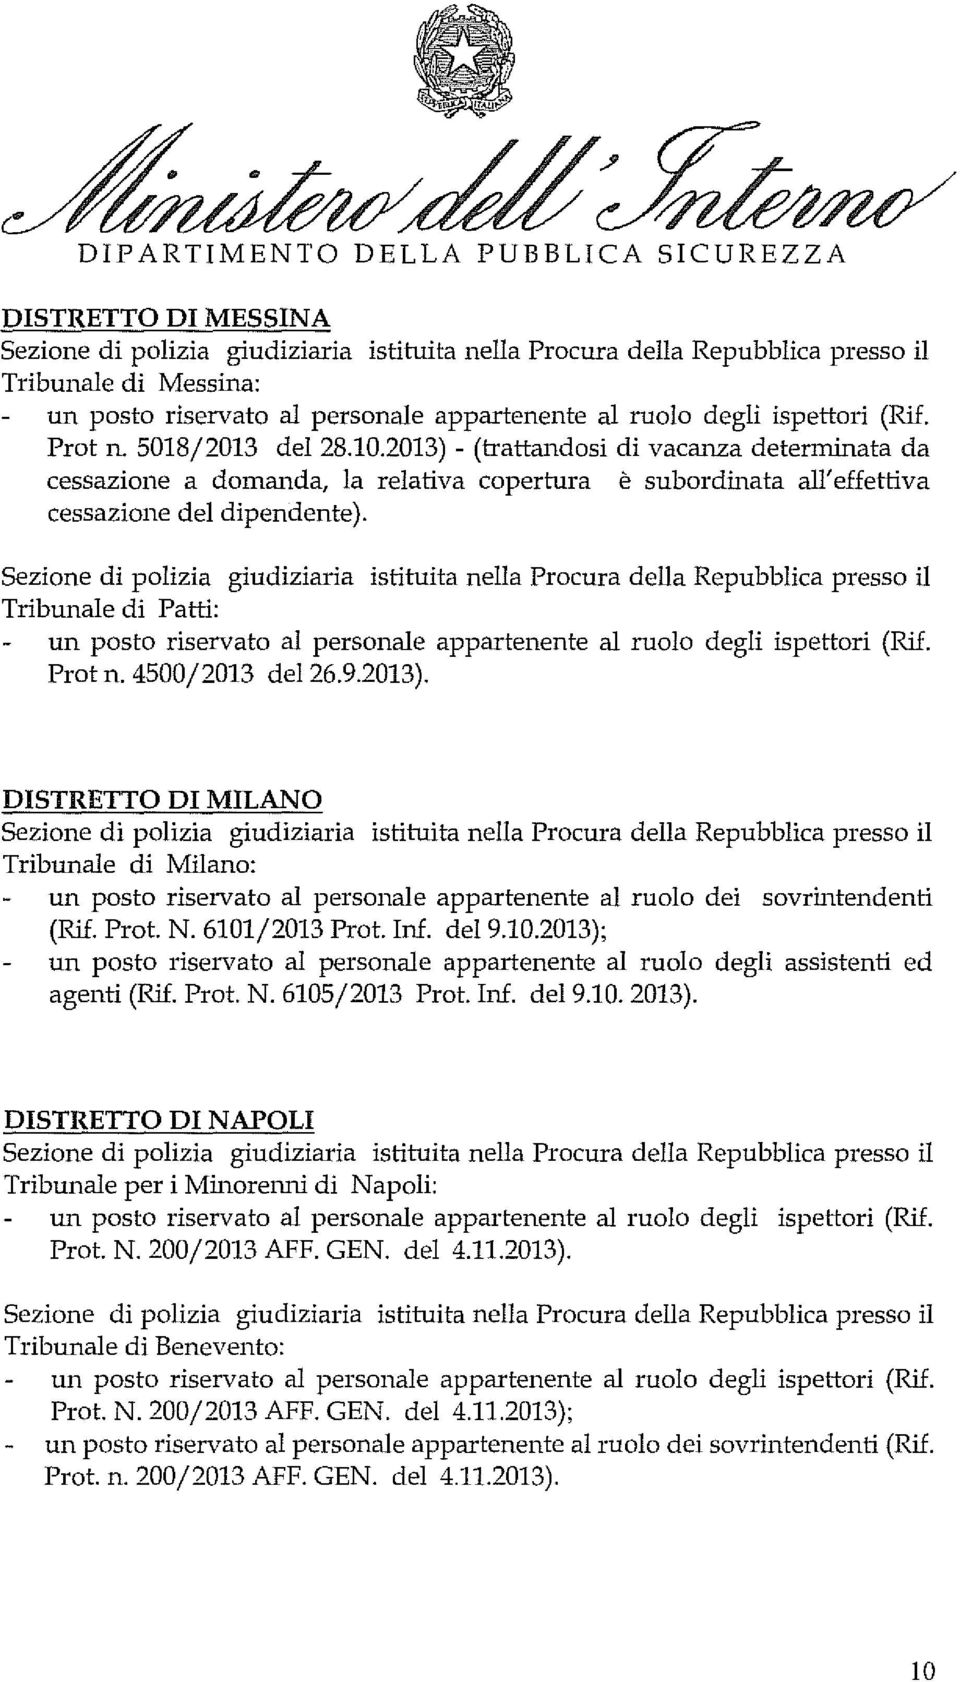 2013). DISTRETTO DI MILANO Tribunale di Milano: un posto riservato al personale appartenente al ruolo dei sovrintendenti (Rif. Prot. N. 6101/2013 Prot. Inf. del 9.10.2013); agenti (Rif. Prot. N. 6105/2013 Prot.